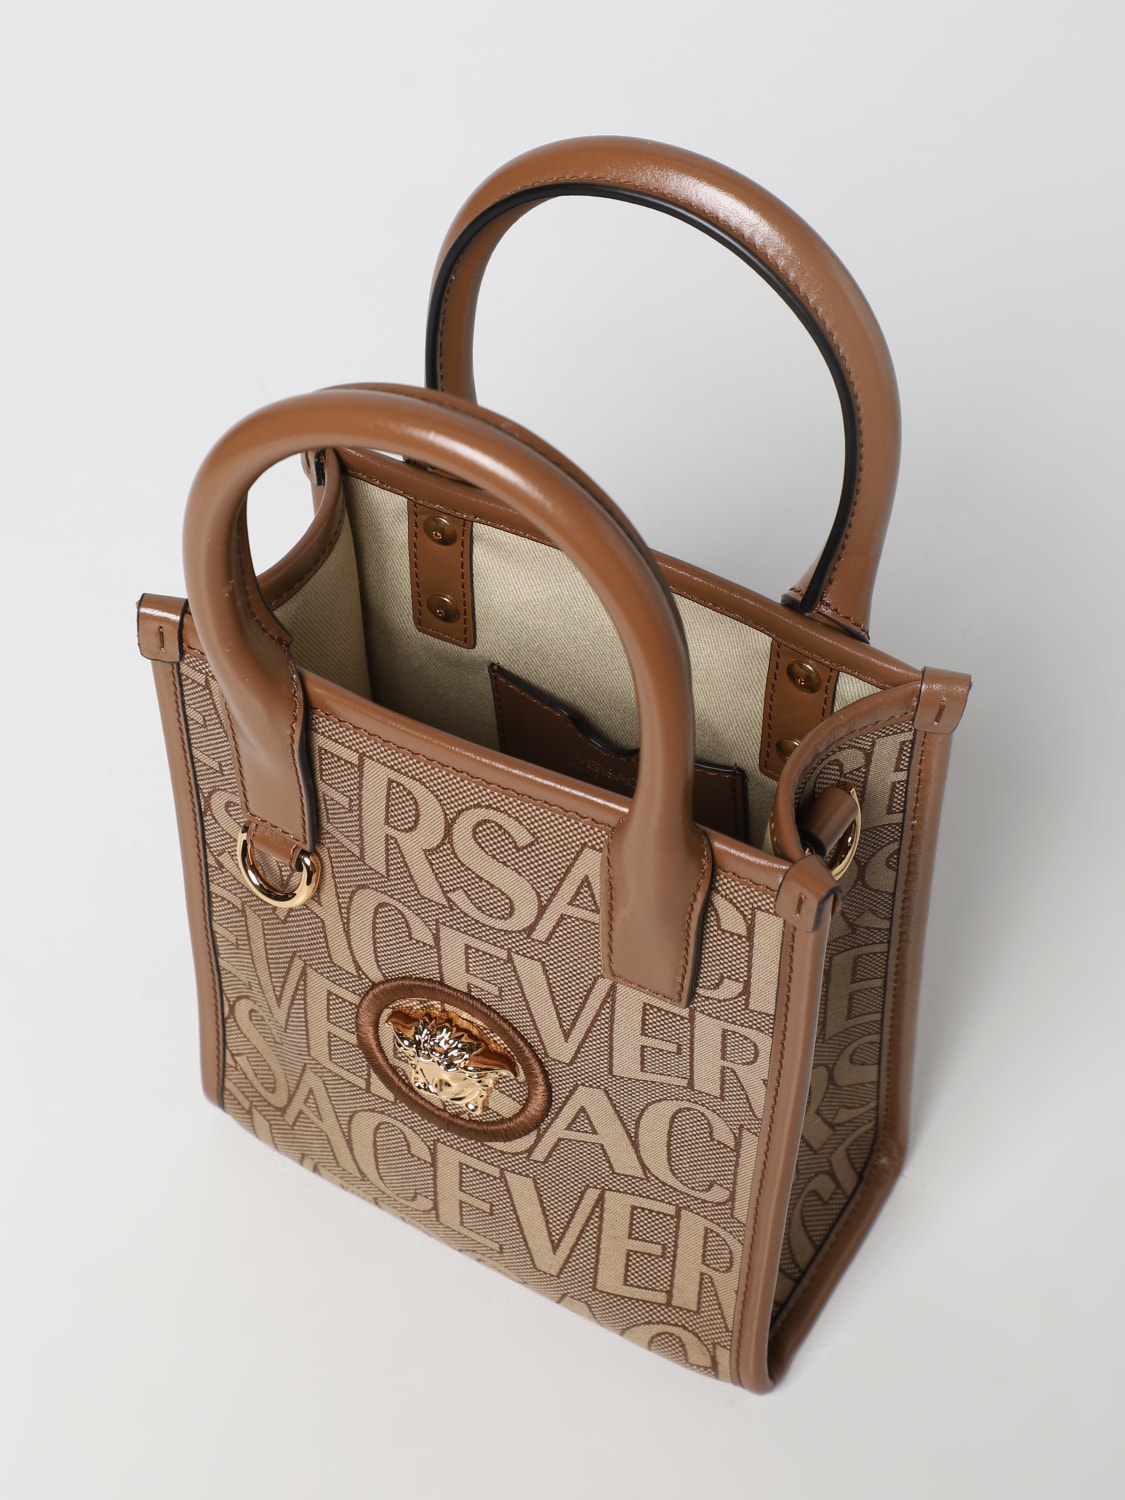 Versace Logo Jacquard Mini Tote Bag in Brown